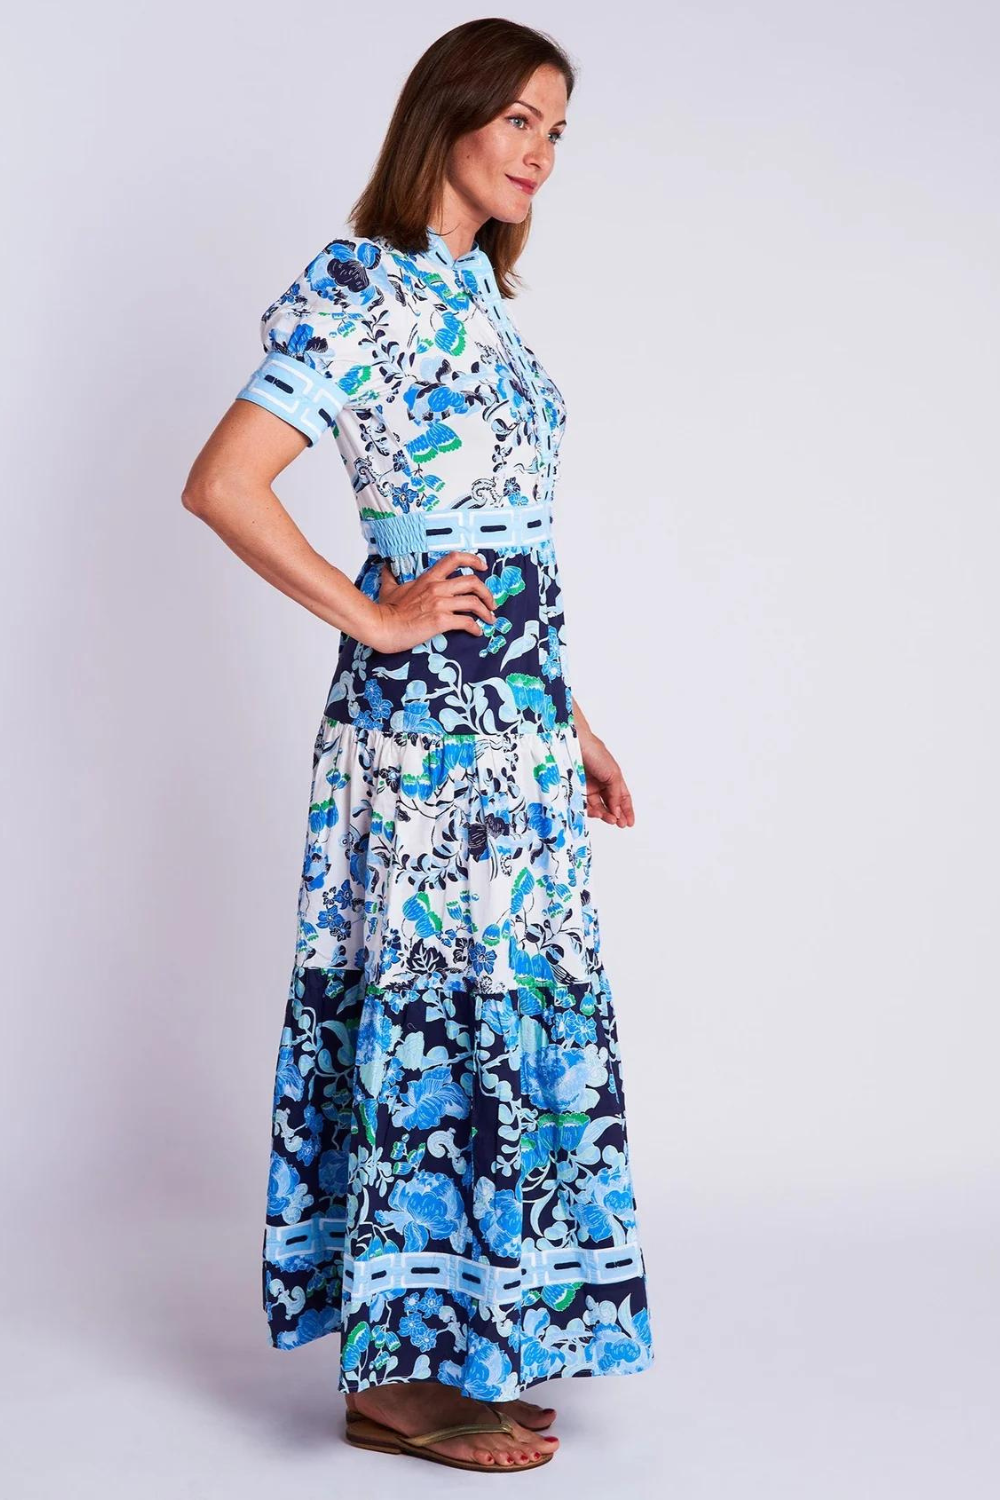 CK Bradley Annabelle Short Sleeve Dress - Cordelia White & Blue